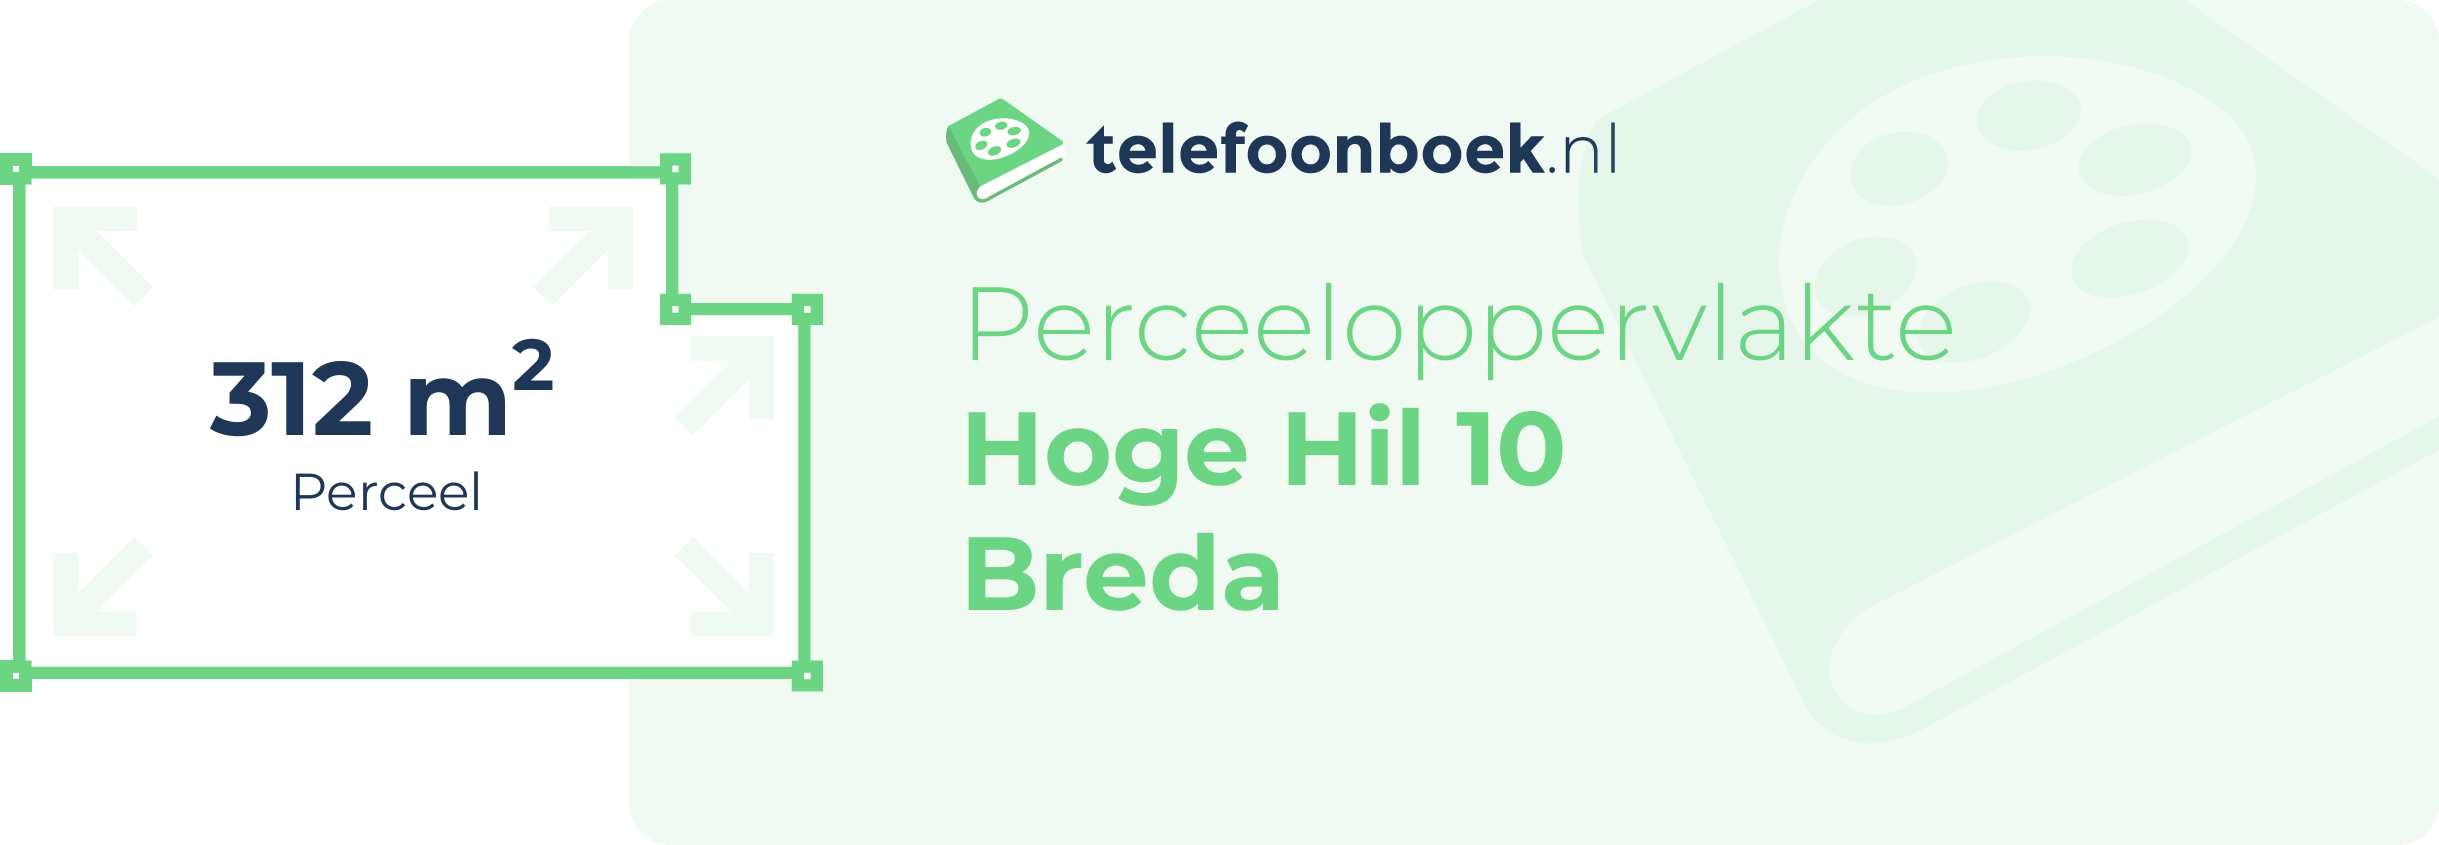 Perceeloppervlakte Hoge Hil 10 Breda